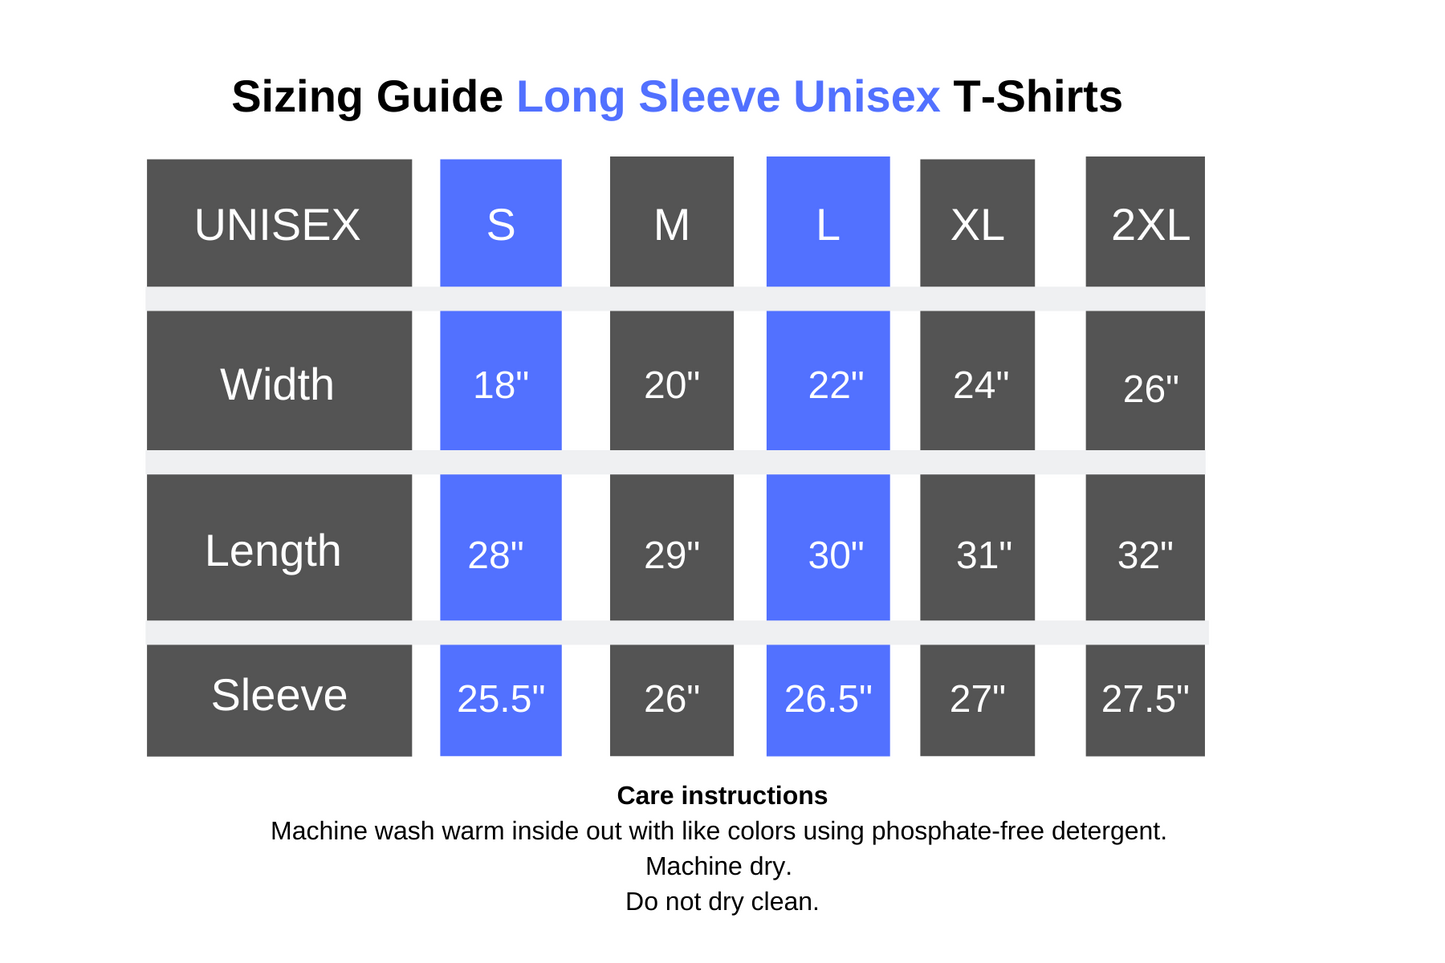 Sizing guide long sleeve unisex t-shirts